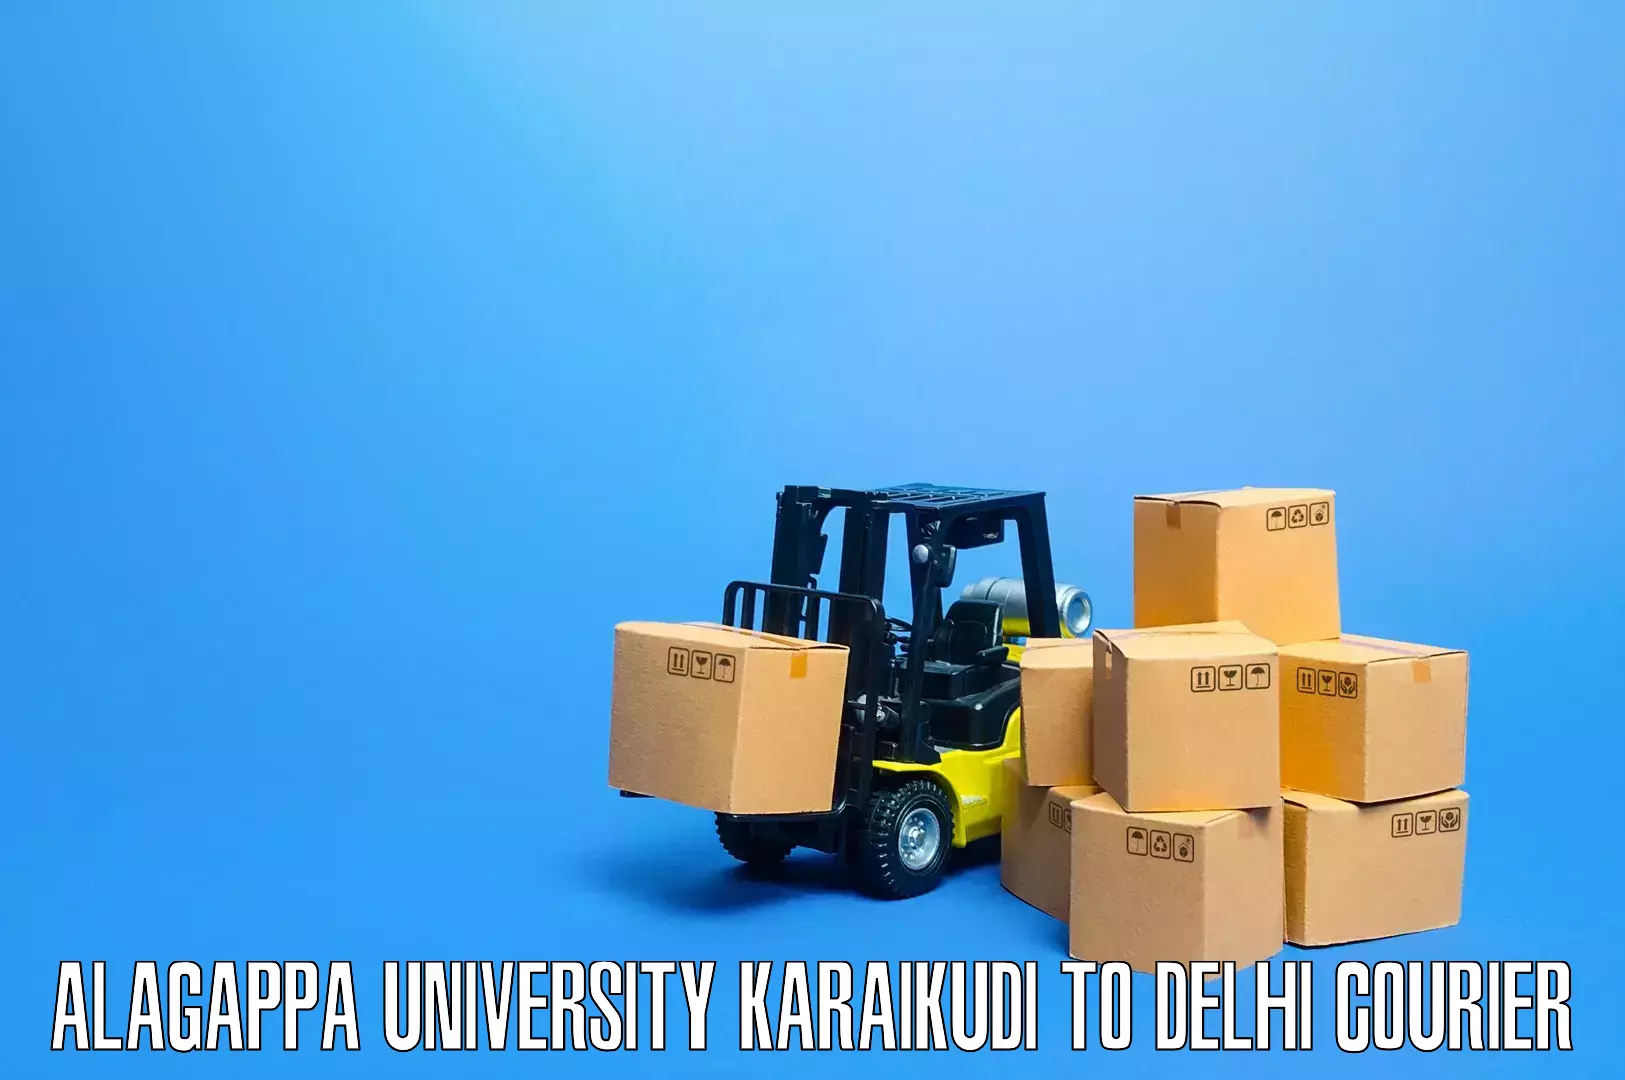 Furniture moving experts Alagappa University Karaikudi to Burari